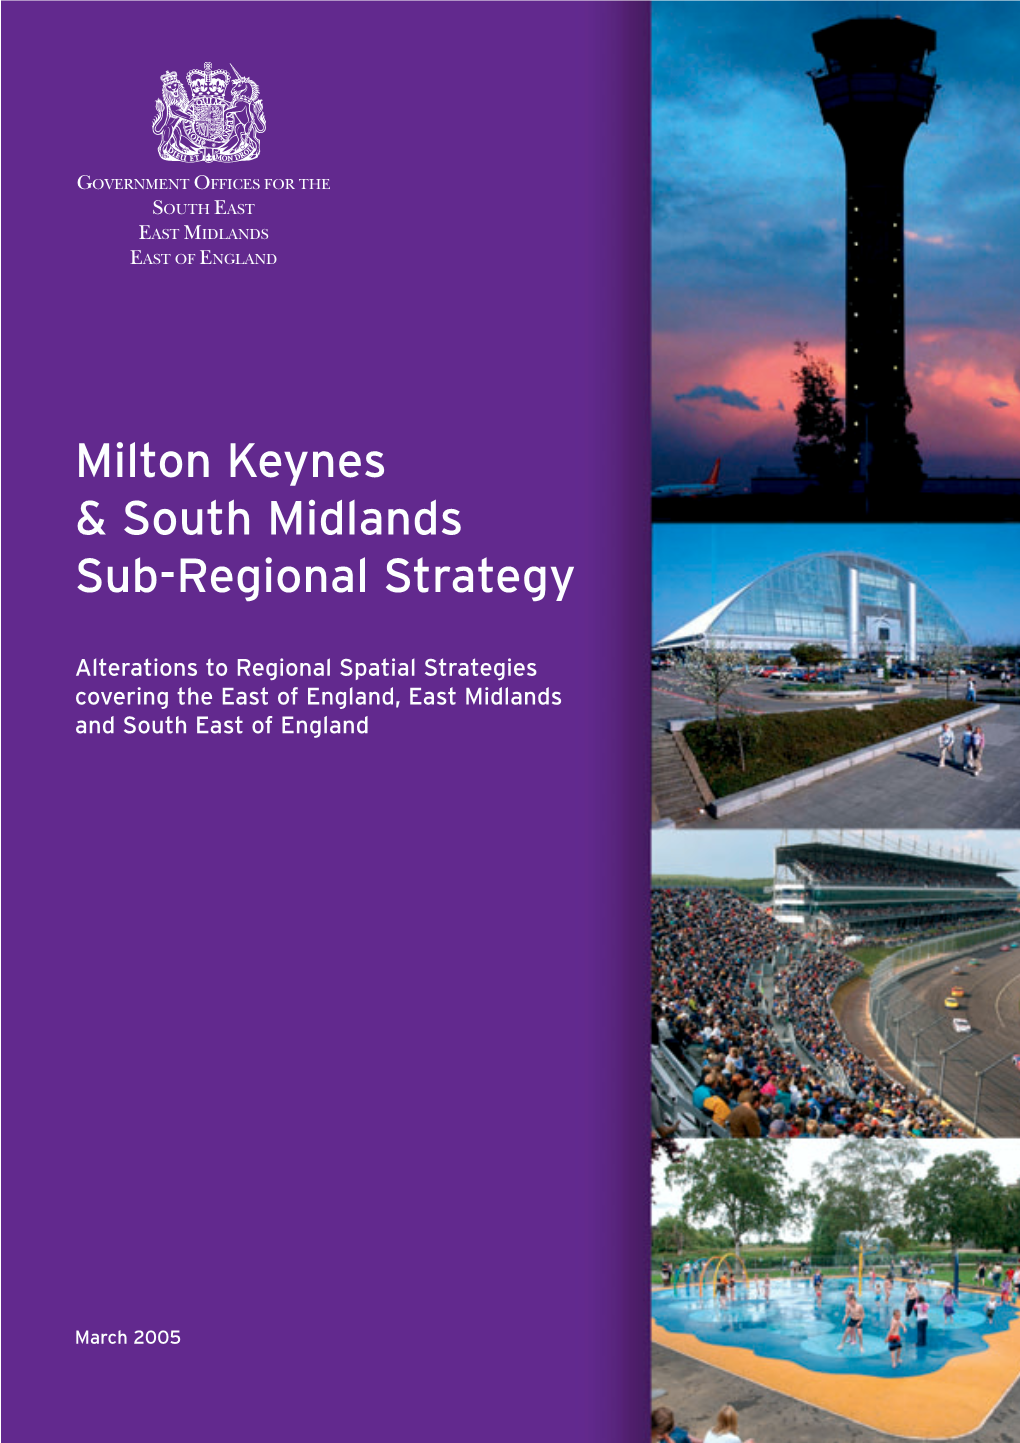 Milton Keynes and South Midlands Sub-Regional Strategy